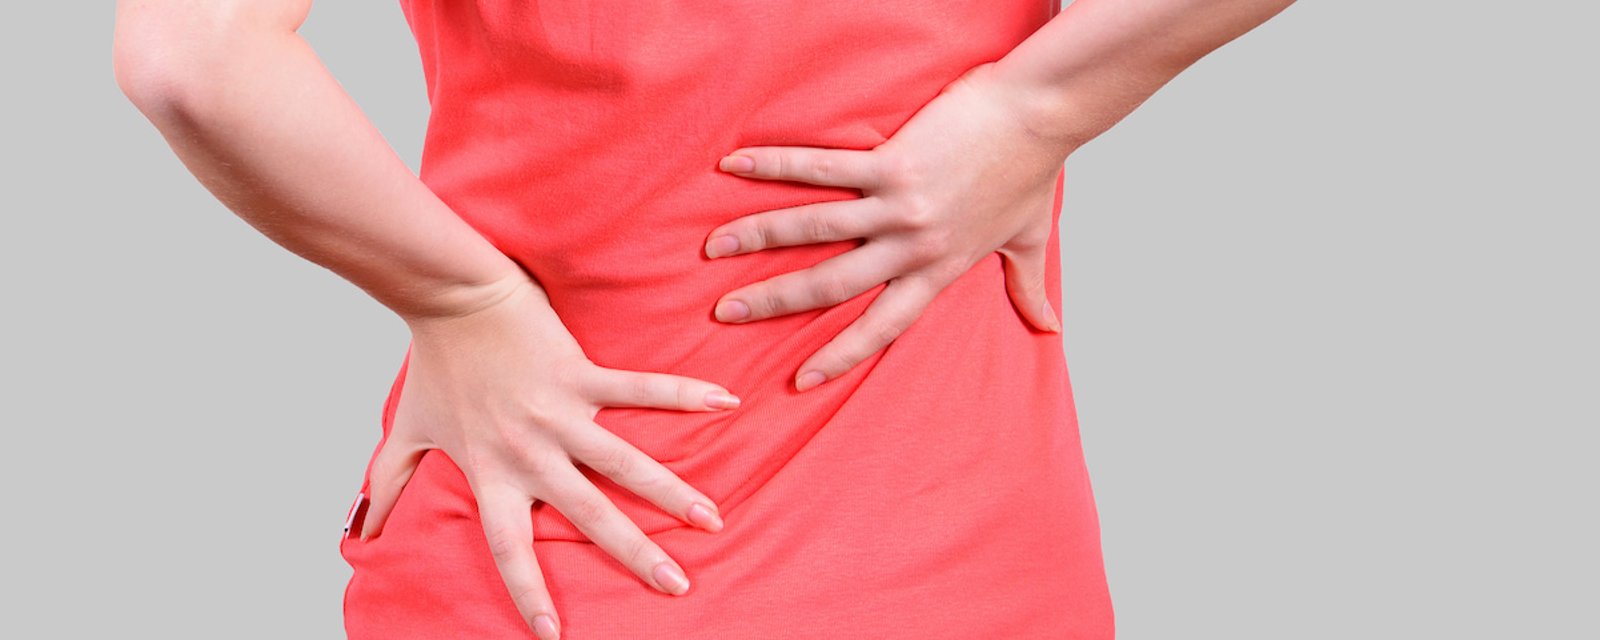 10 étirements simples qui élimineront vos douleurs au bas du dos, aux hanches et à la sciatique